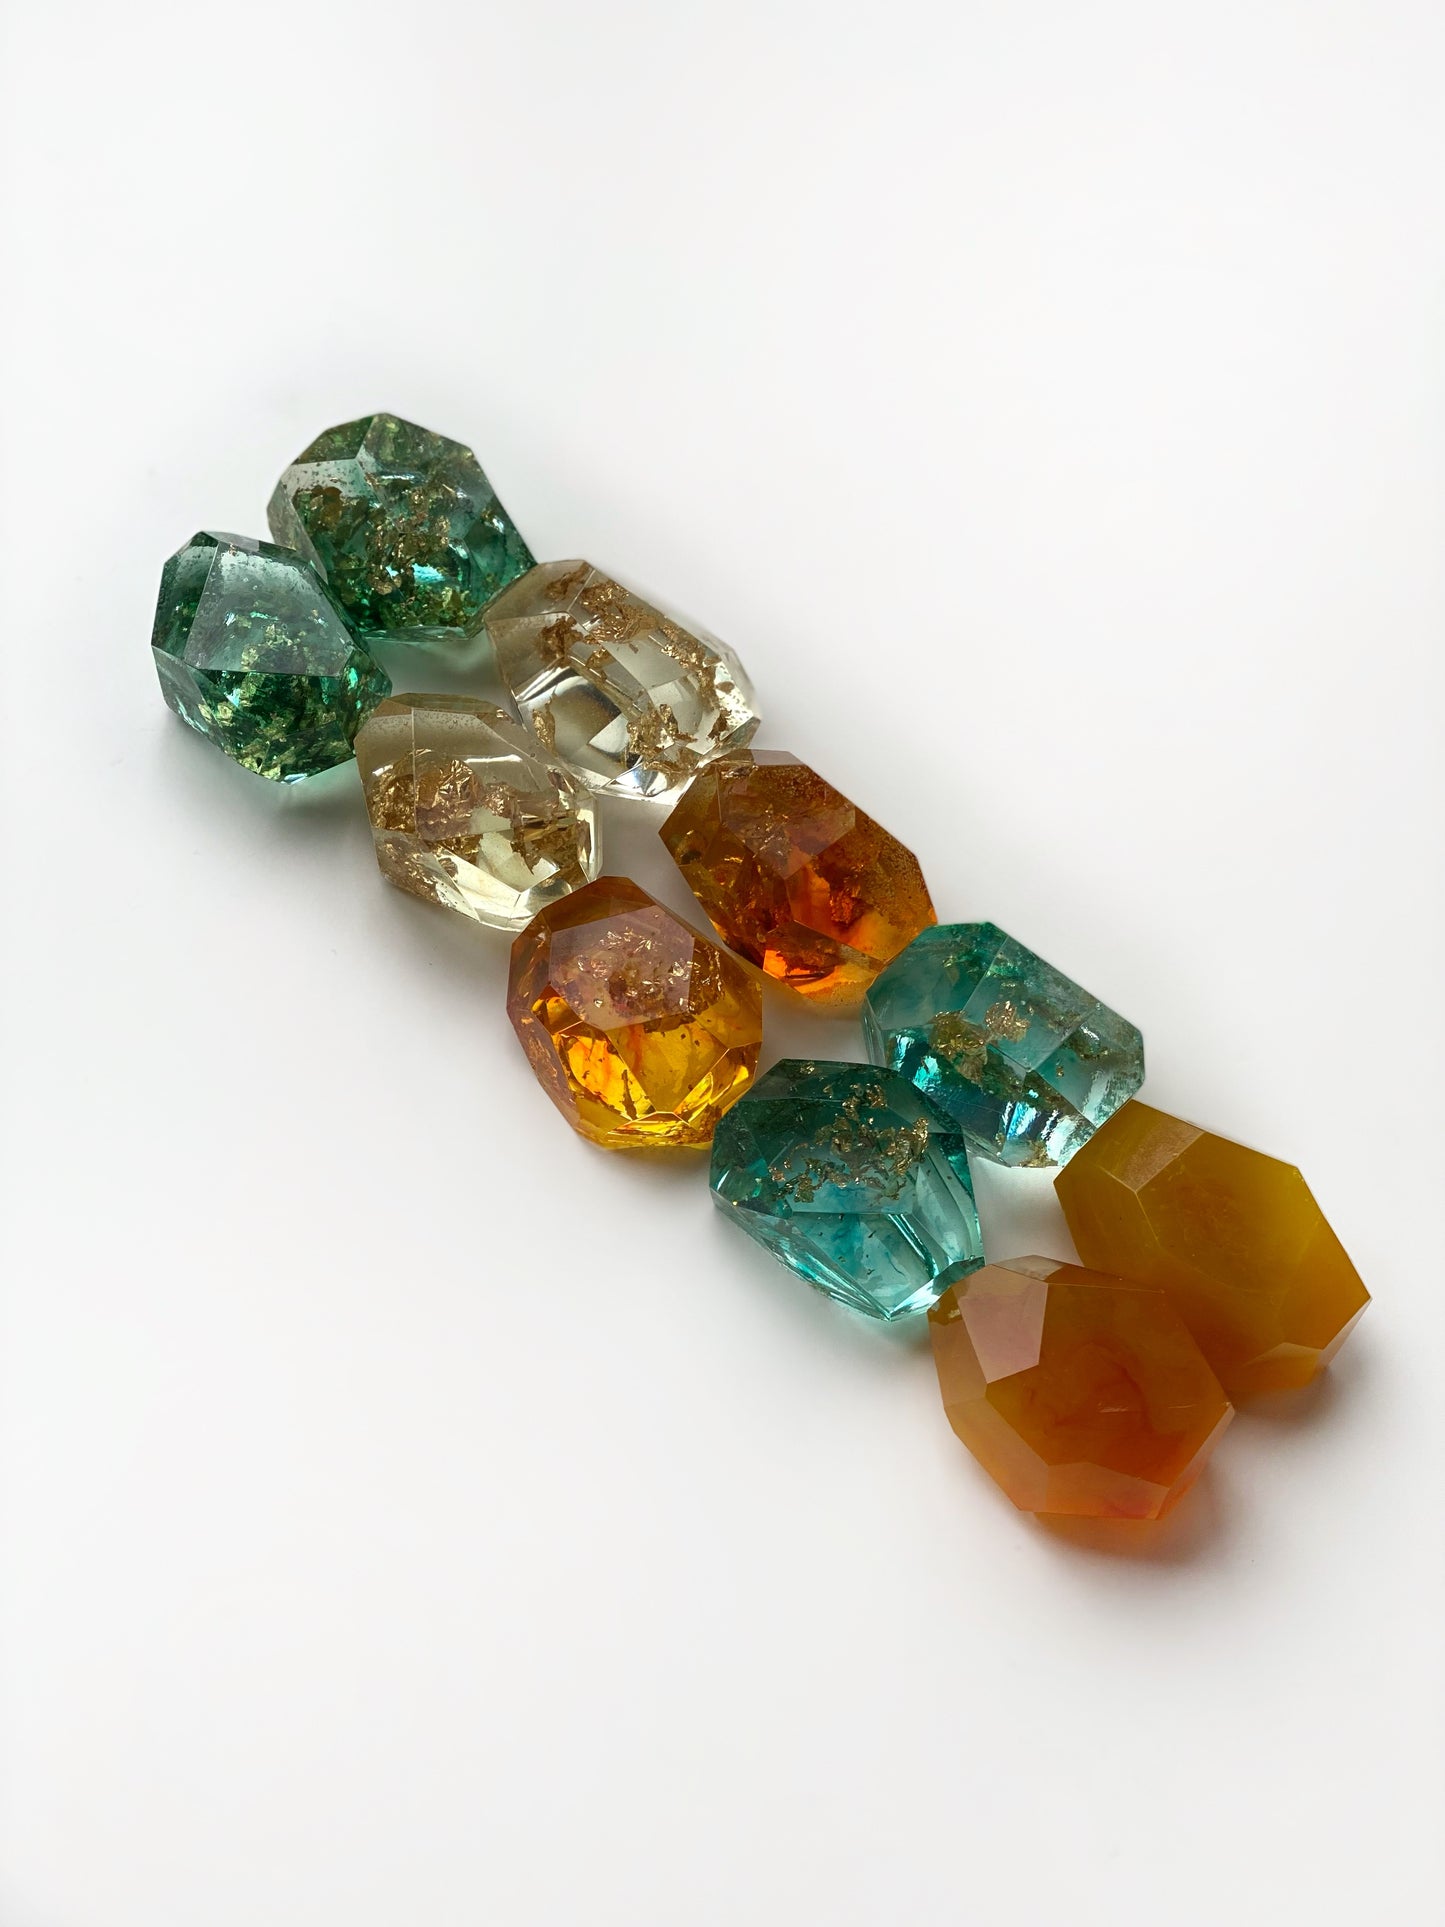 Resin Gemstones